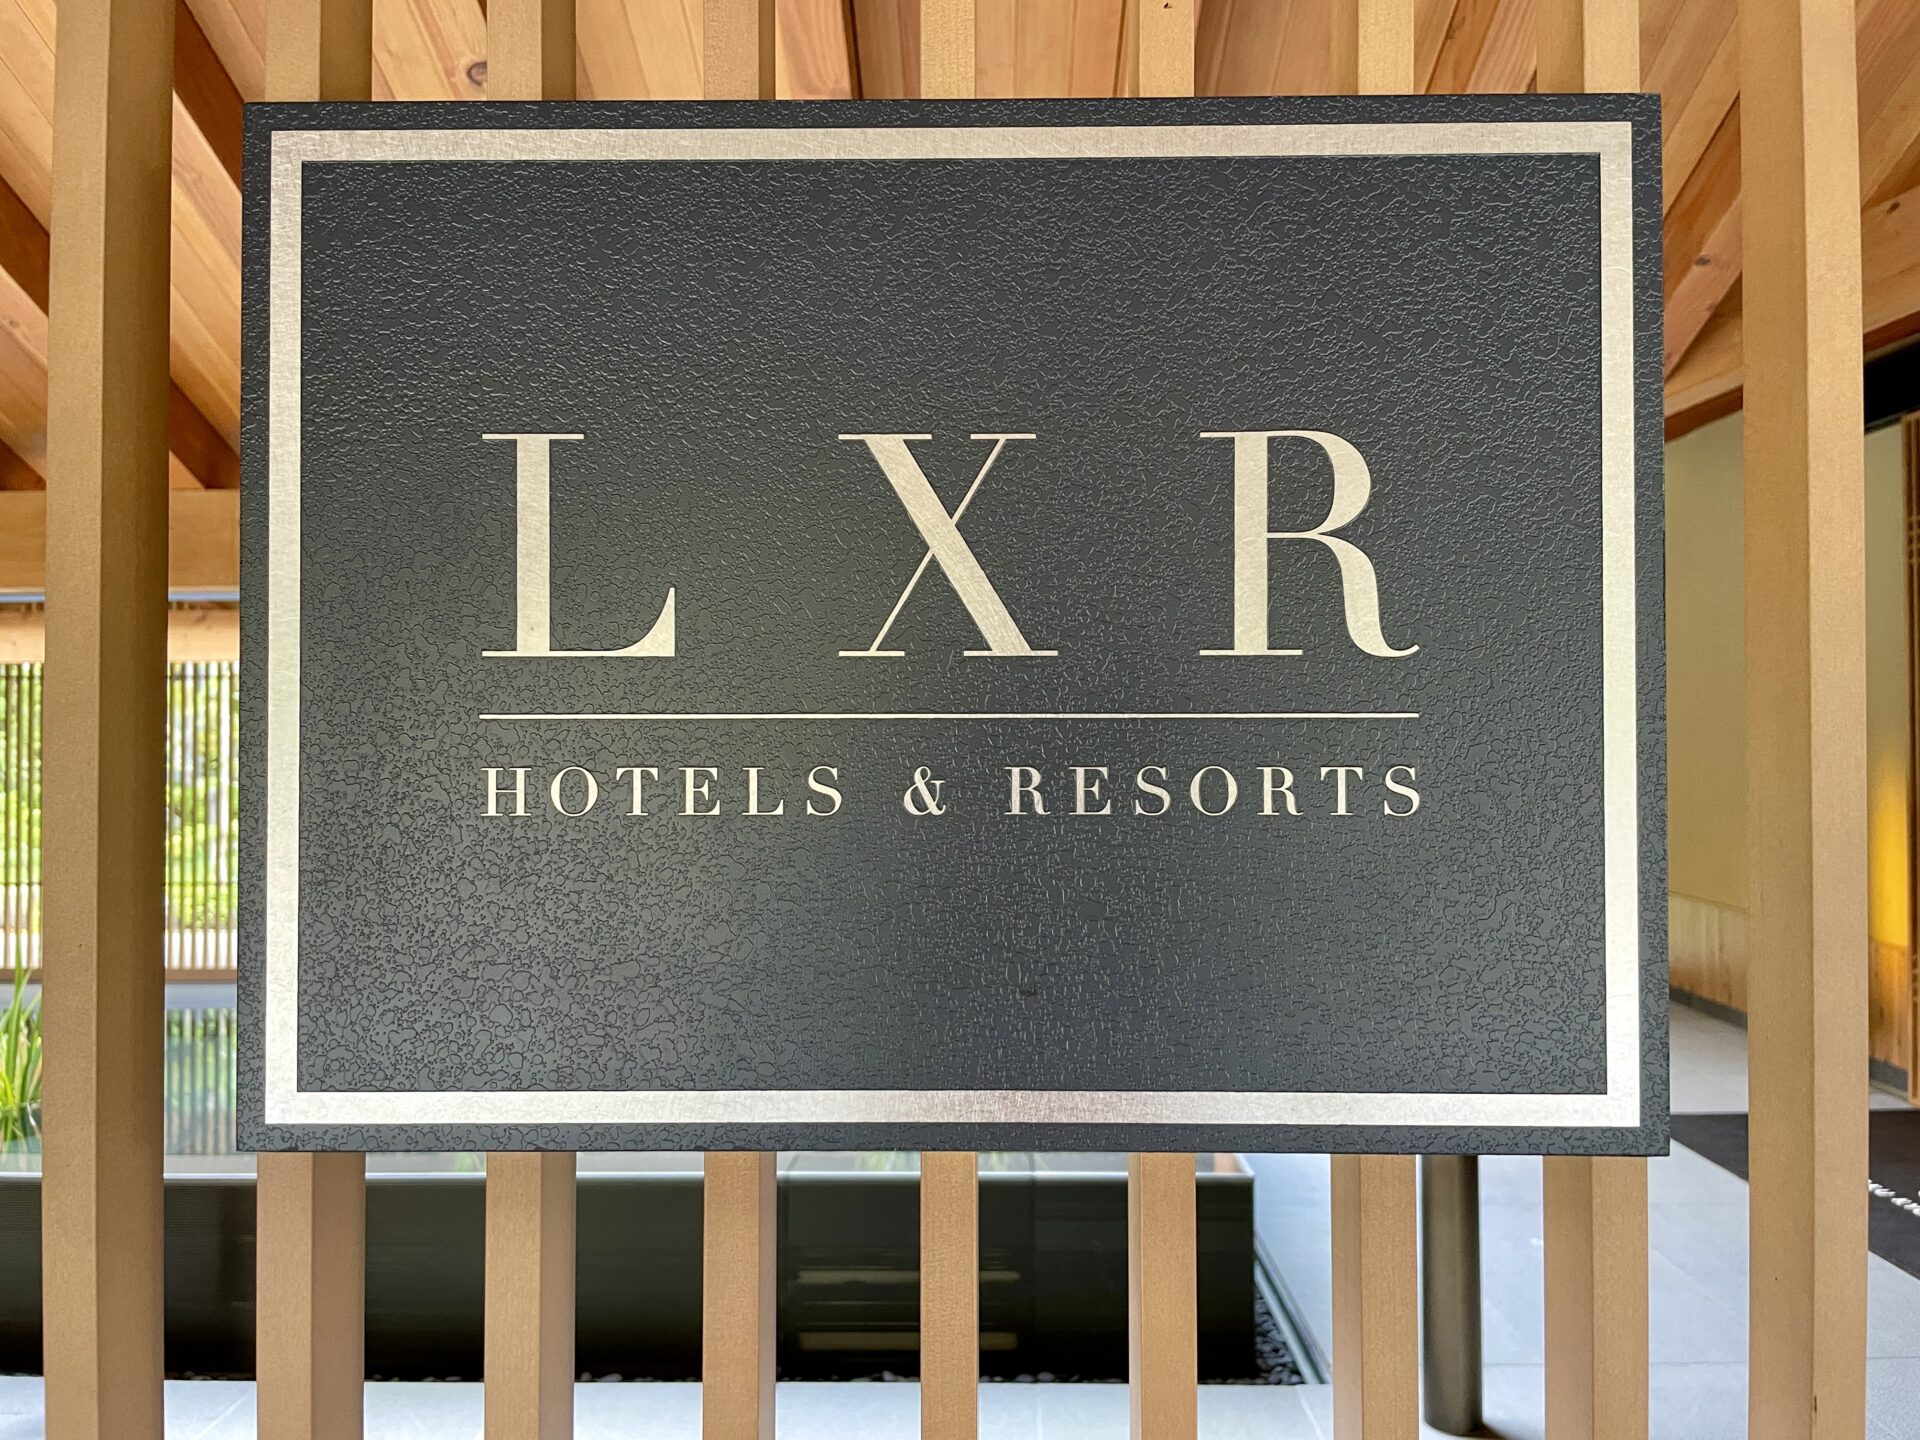 ロク京都 ROKU KYOTO, LXR Hotels & Resorts